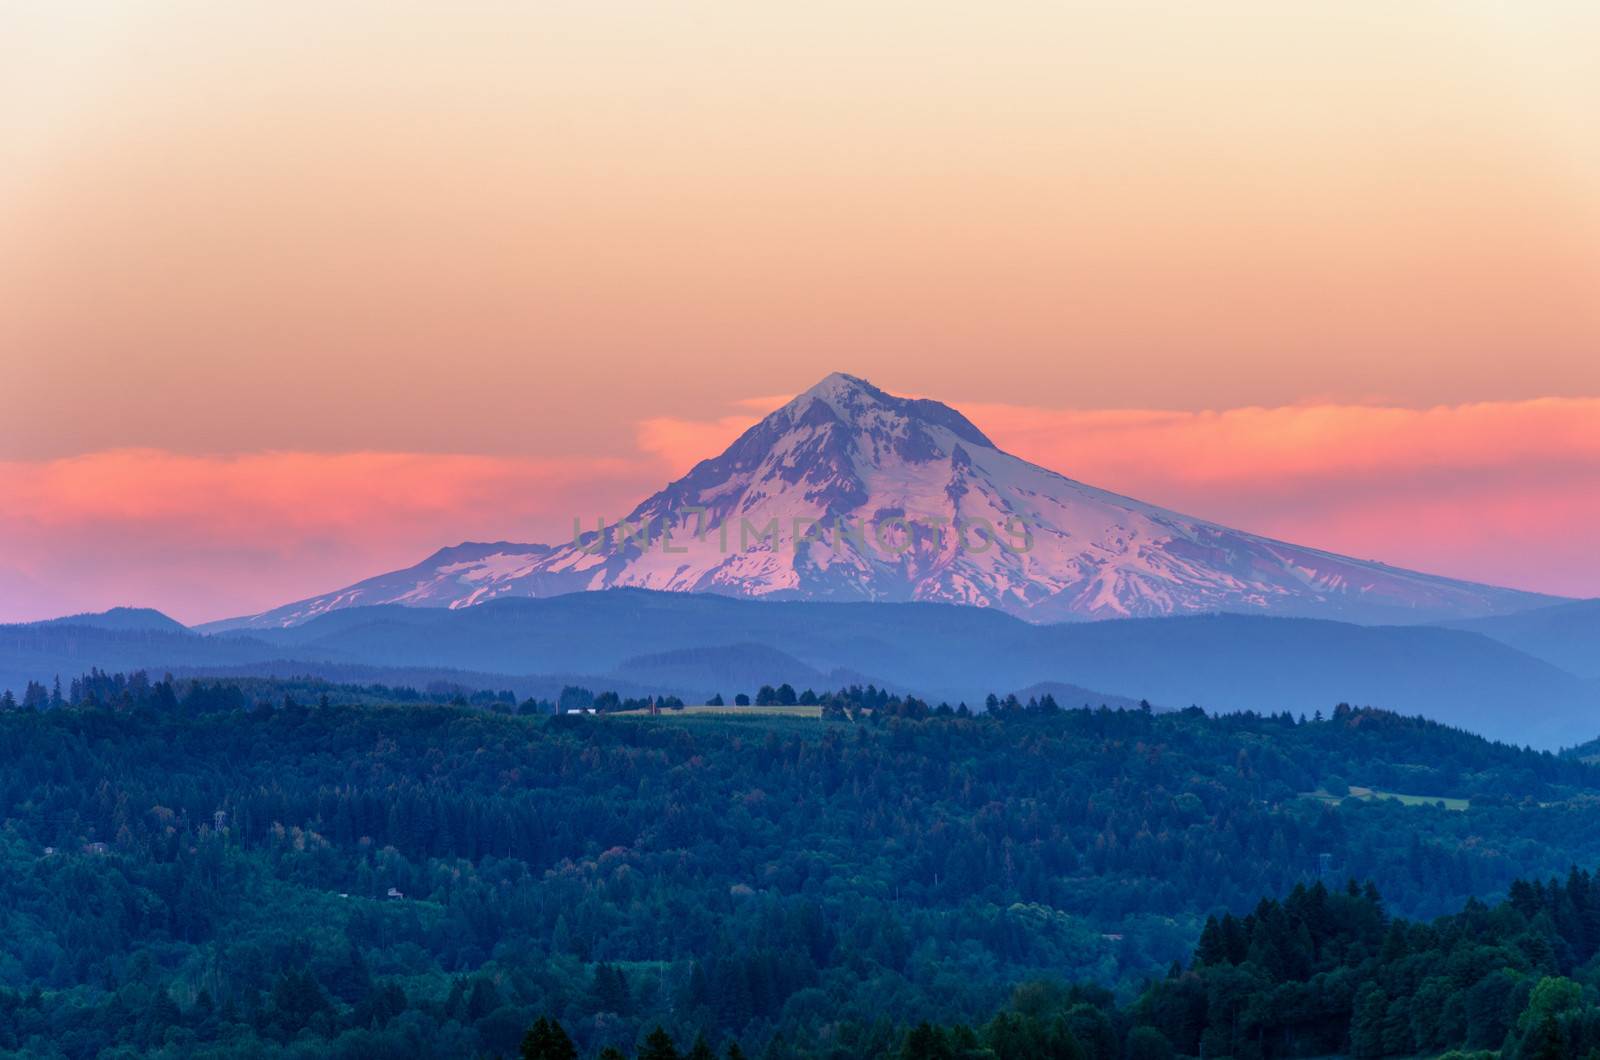 Mount Hood Sunset Closeup by jkraft5